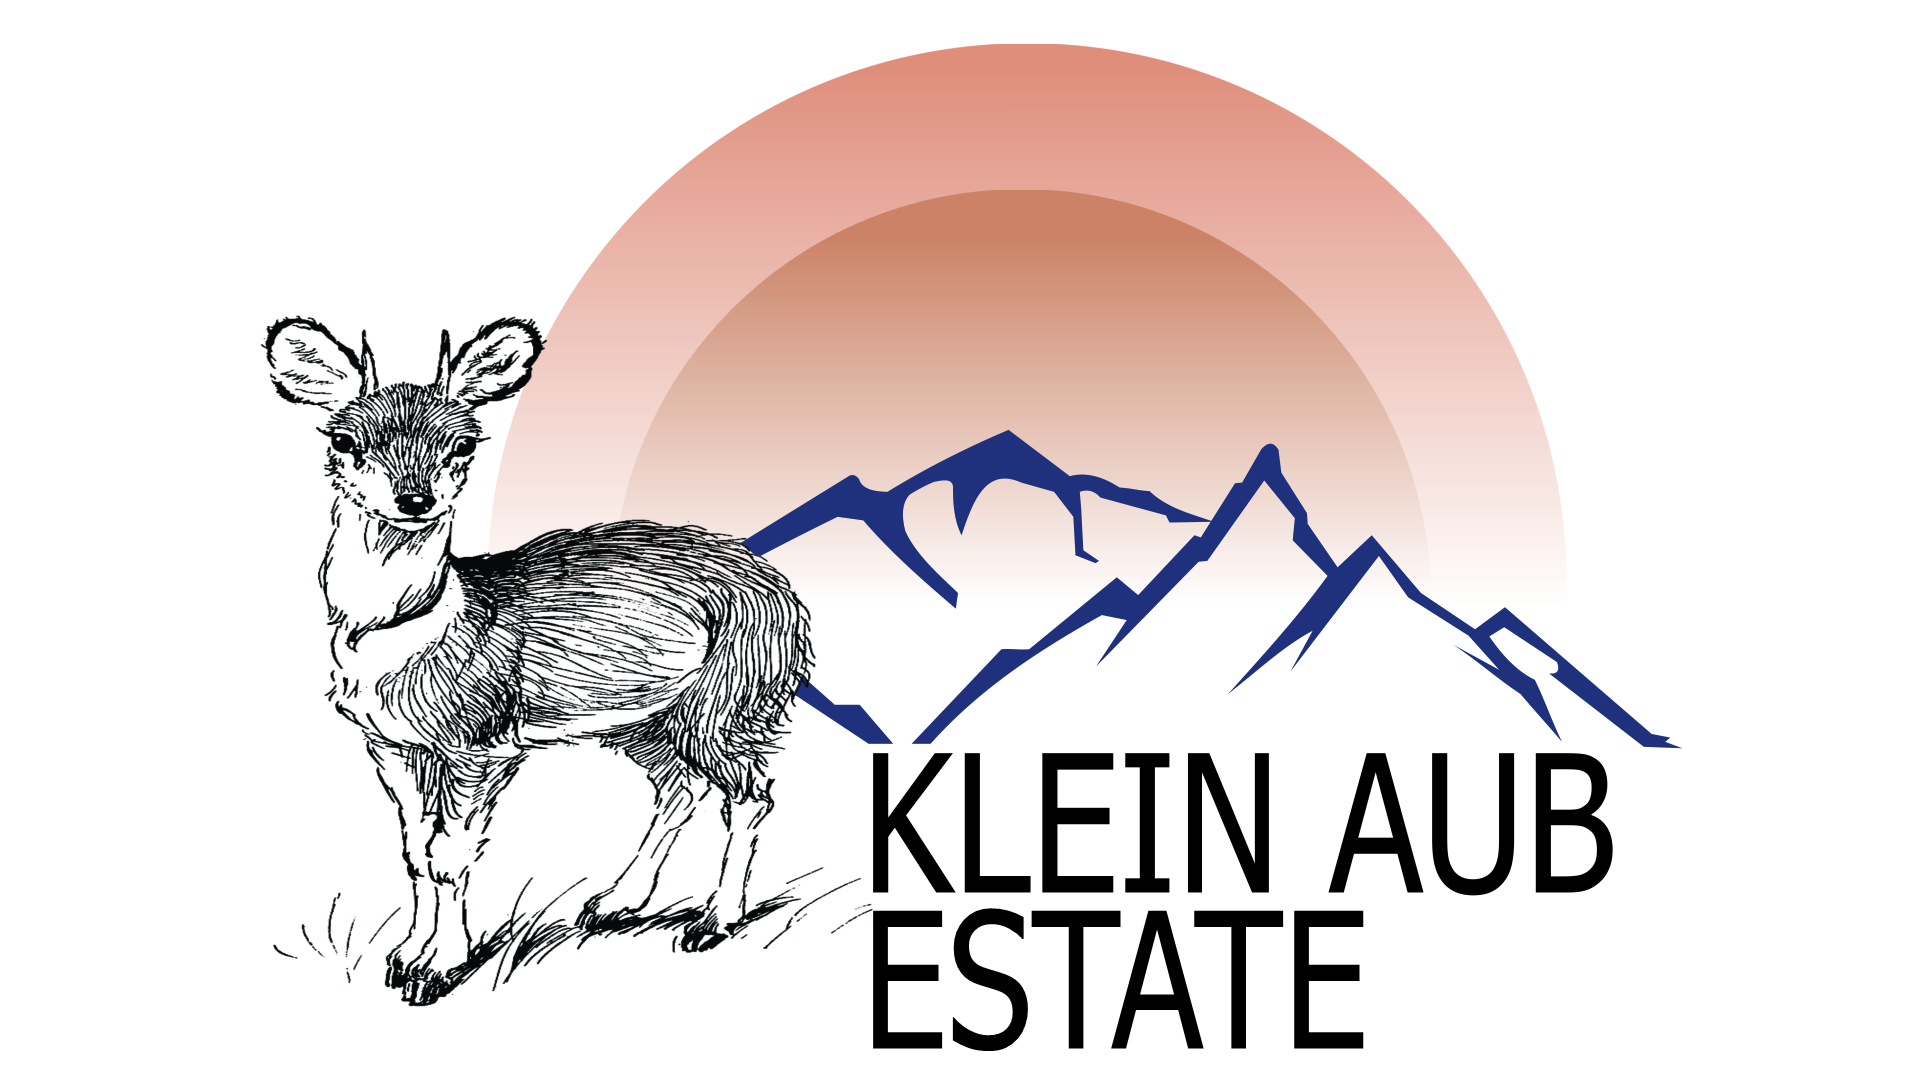 Klein Aub Estate